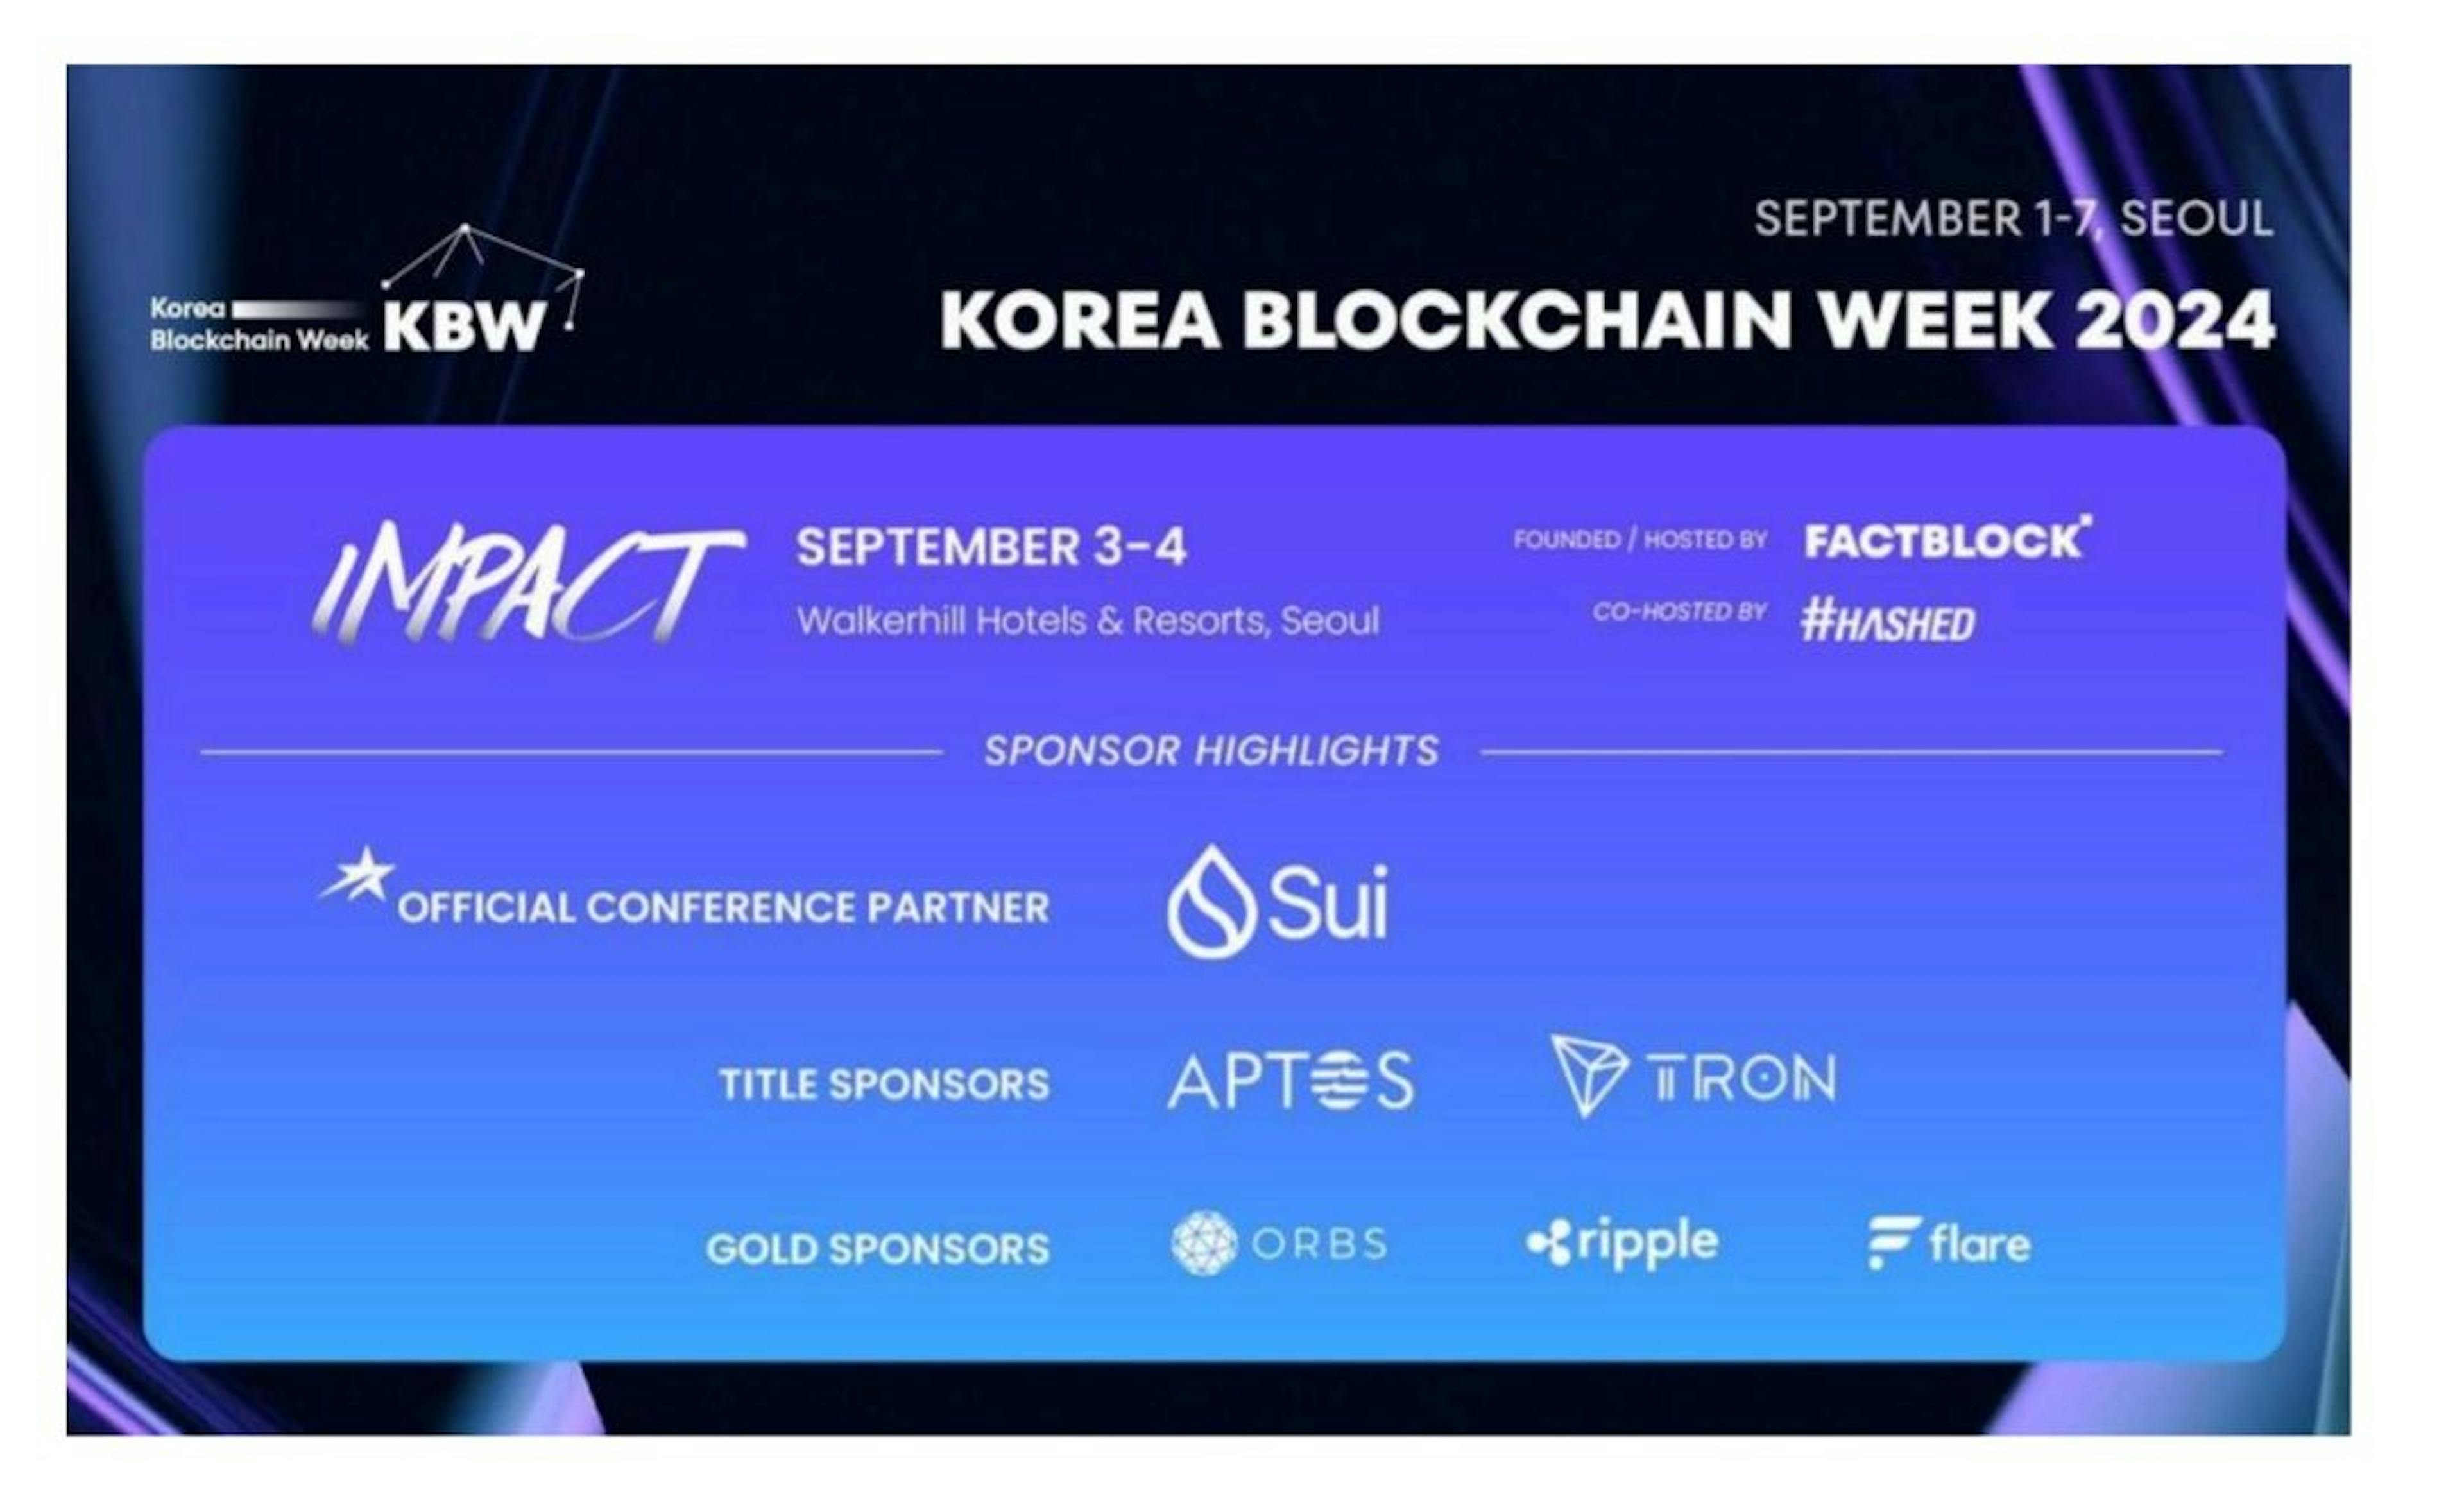 featured image - Korea Blockchain Week ernennt Sui zum offiziellen Konferenzpartner und gibt neue Hauptredner bekannt